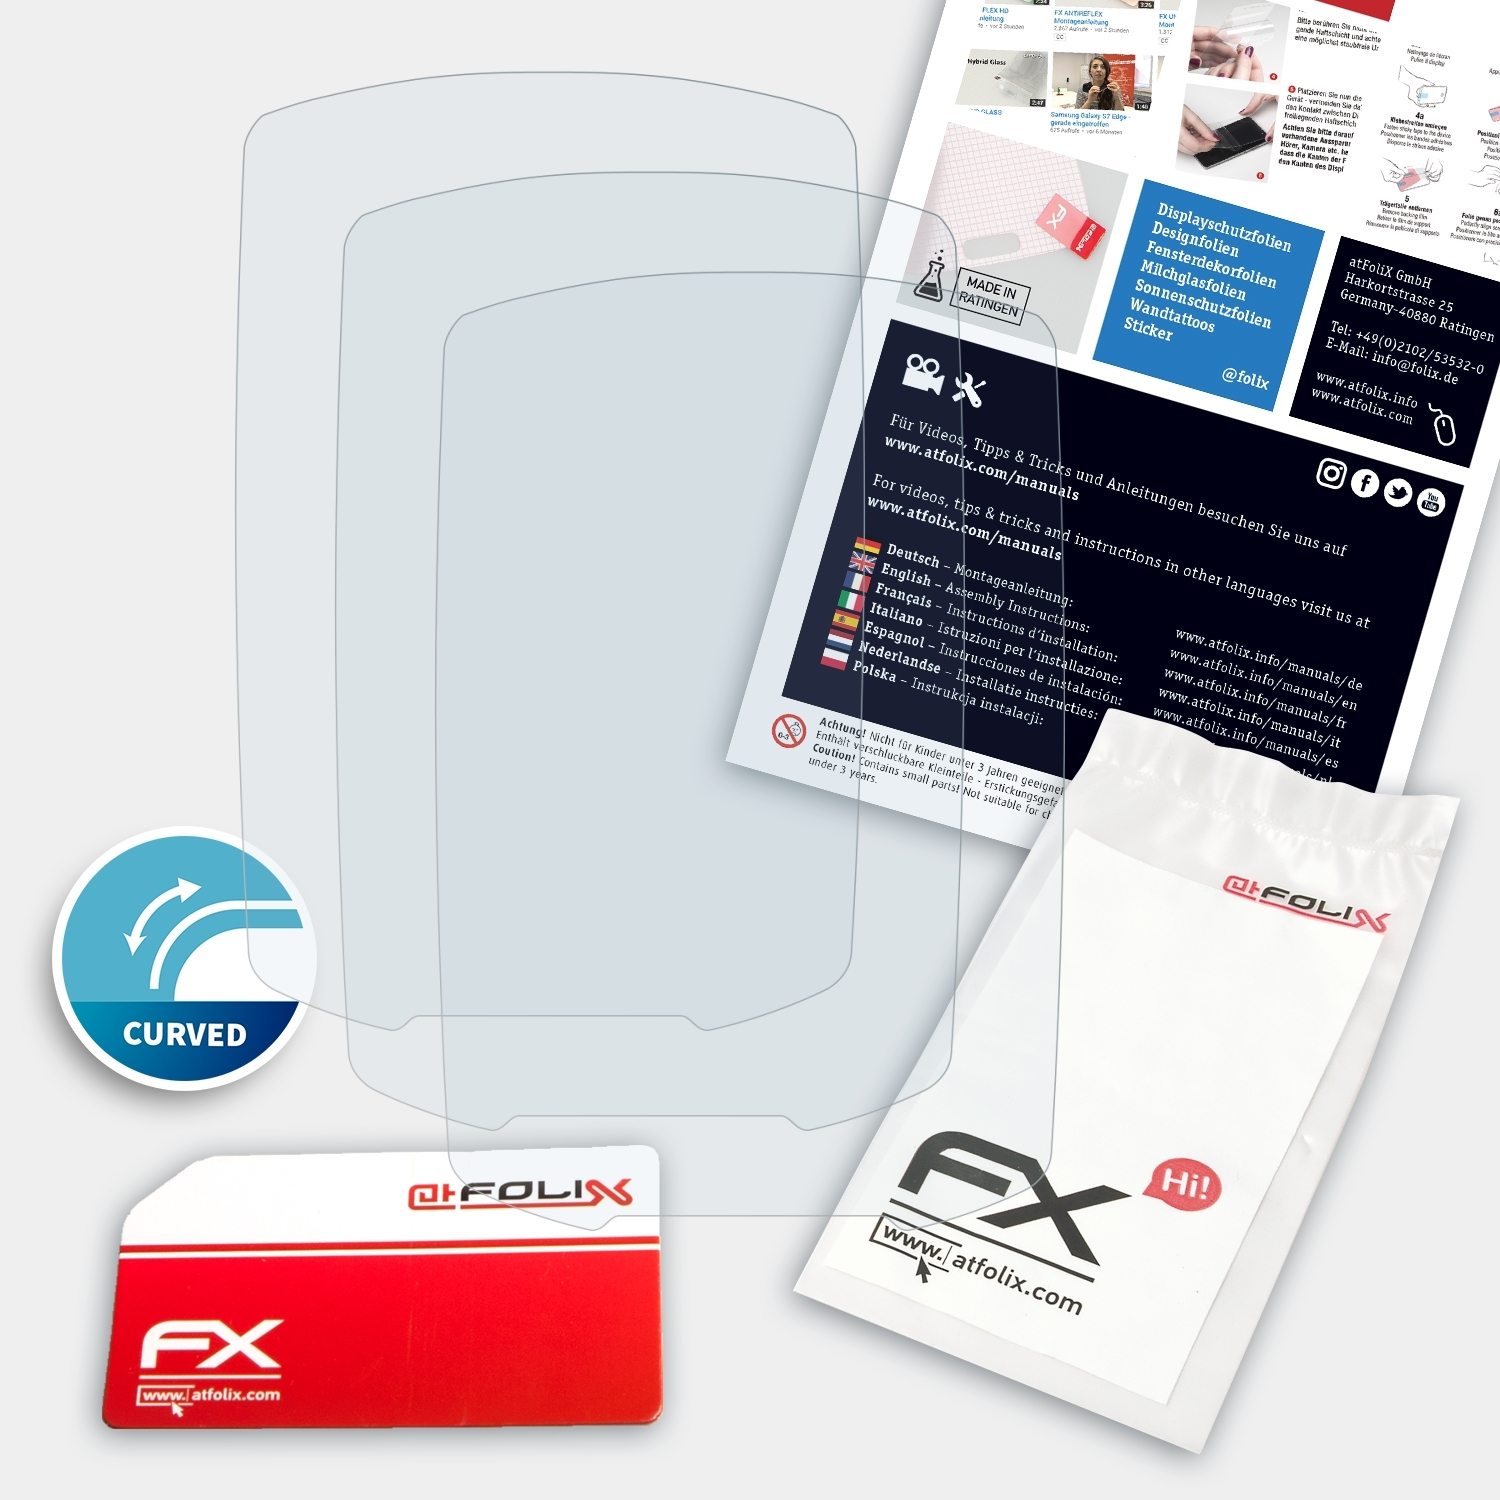 GPSMap 3x FX-ActiFleX Displayschutz(für Garmin ATFOLIX 64csx)